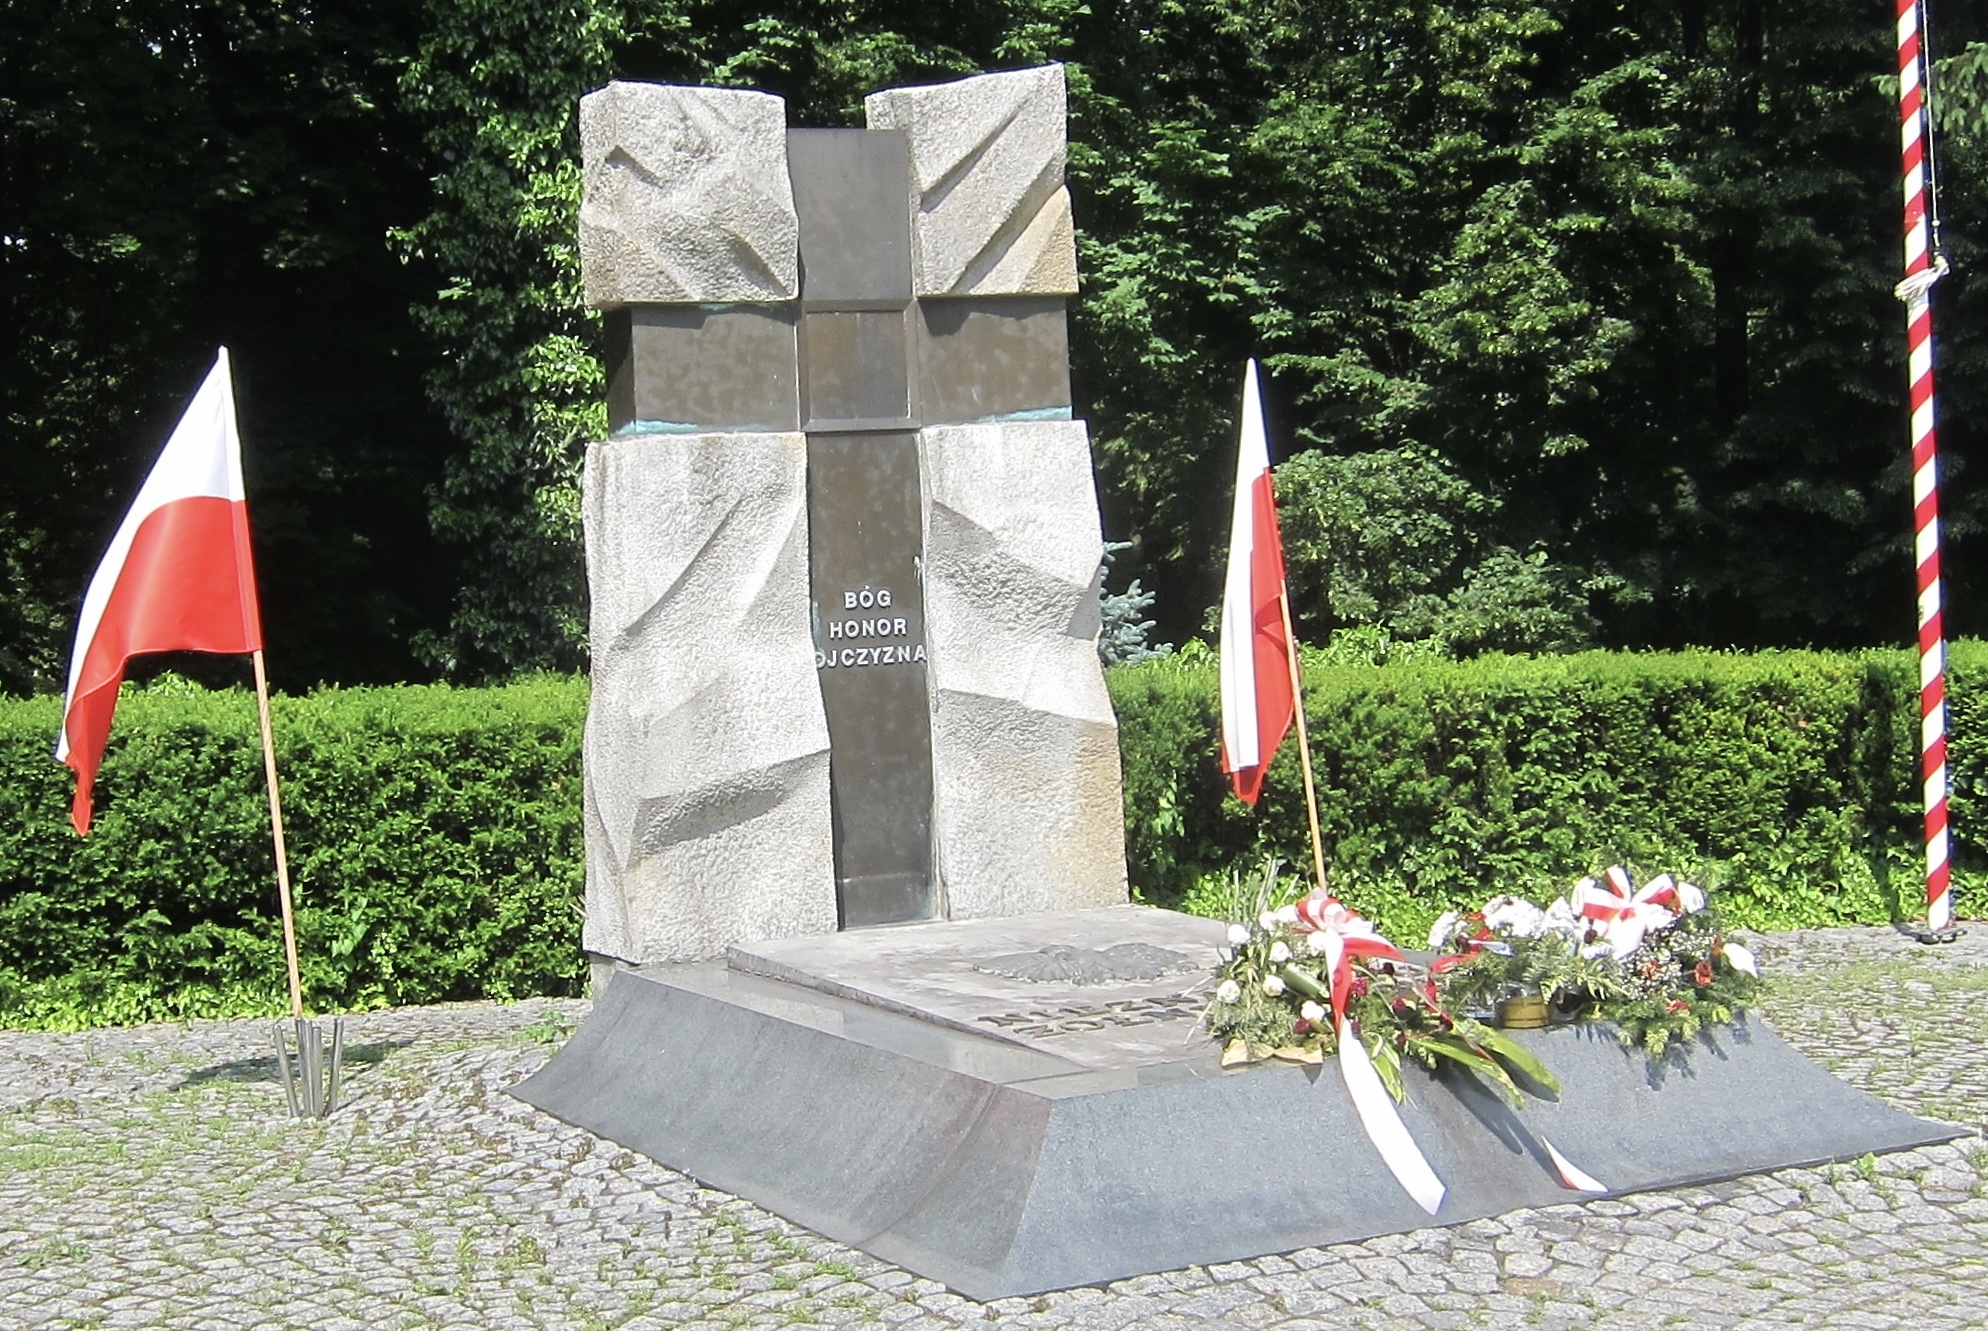 Pomnik Nieznanemu Żołnierzowi / Unknown Soldier Monument Marker